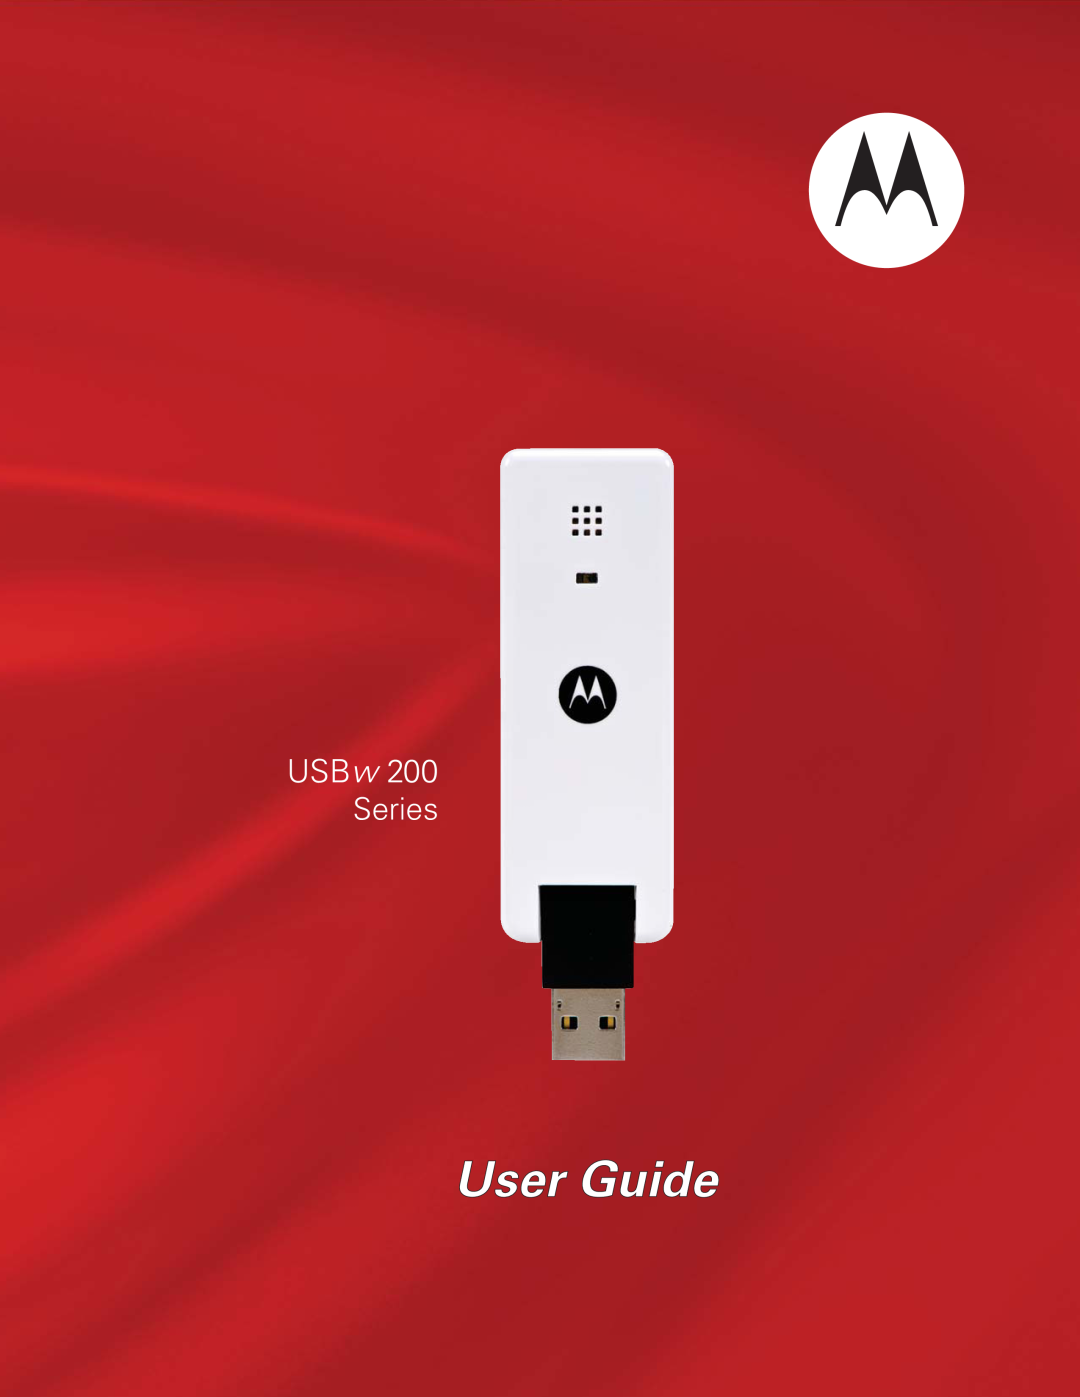 Motorola USBW 200 manual User Guide, USBw, Series 